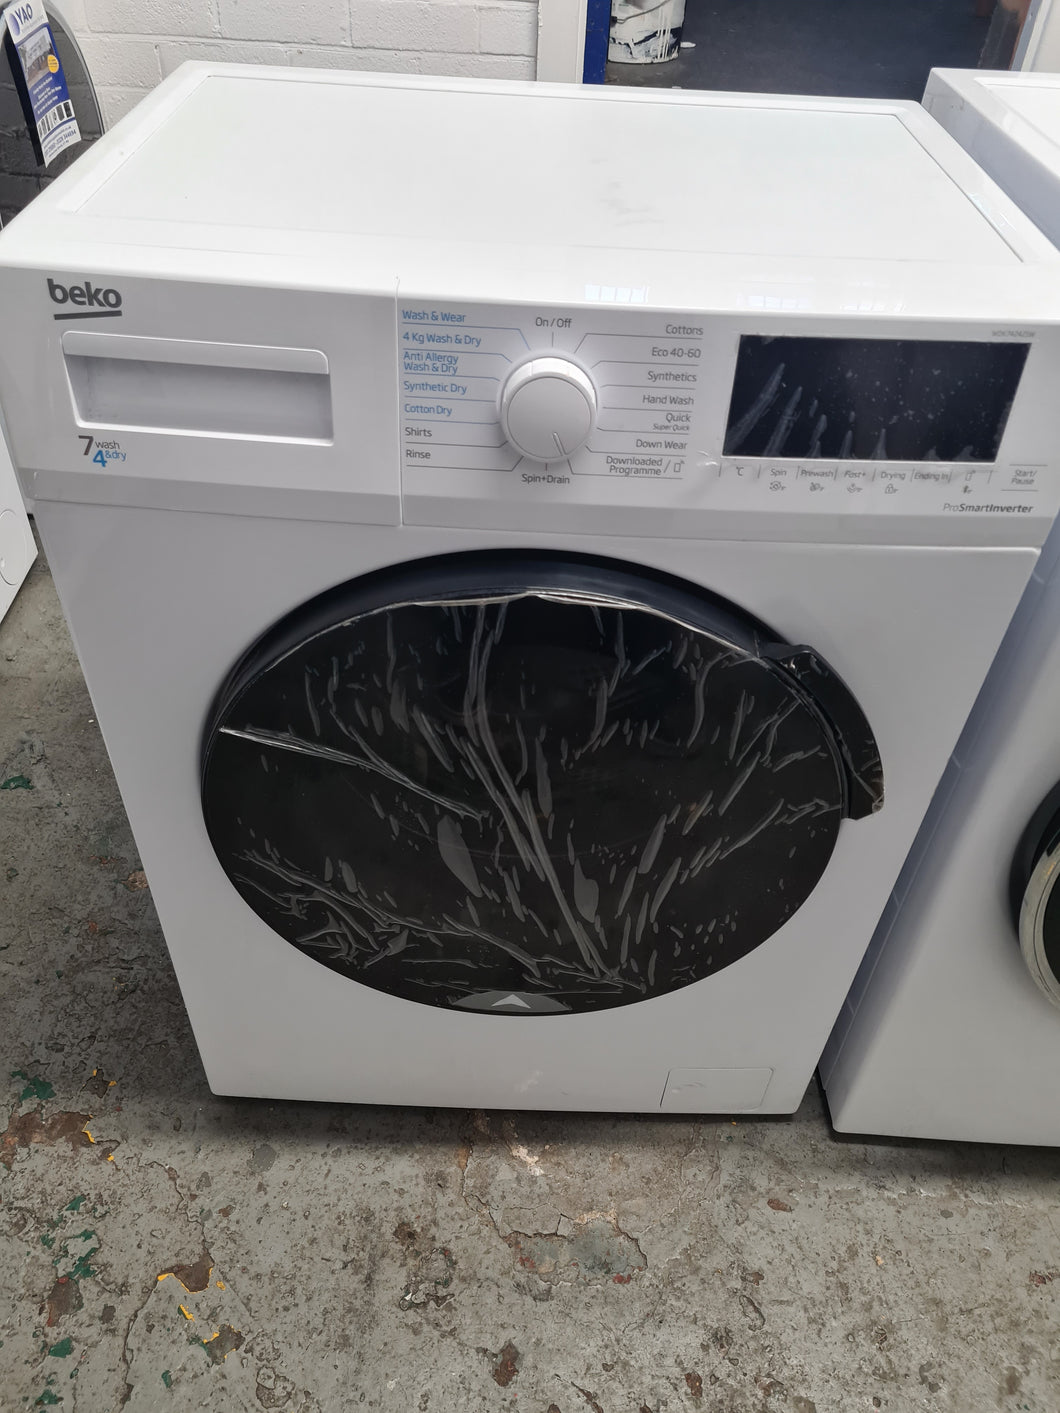 BEKO WDK742421W Bluetooth 7 kg Washer Dryer - White